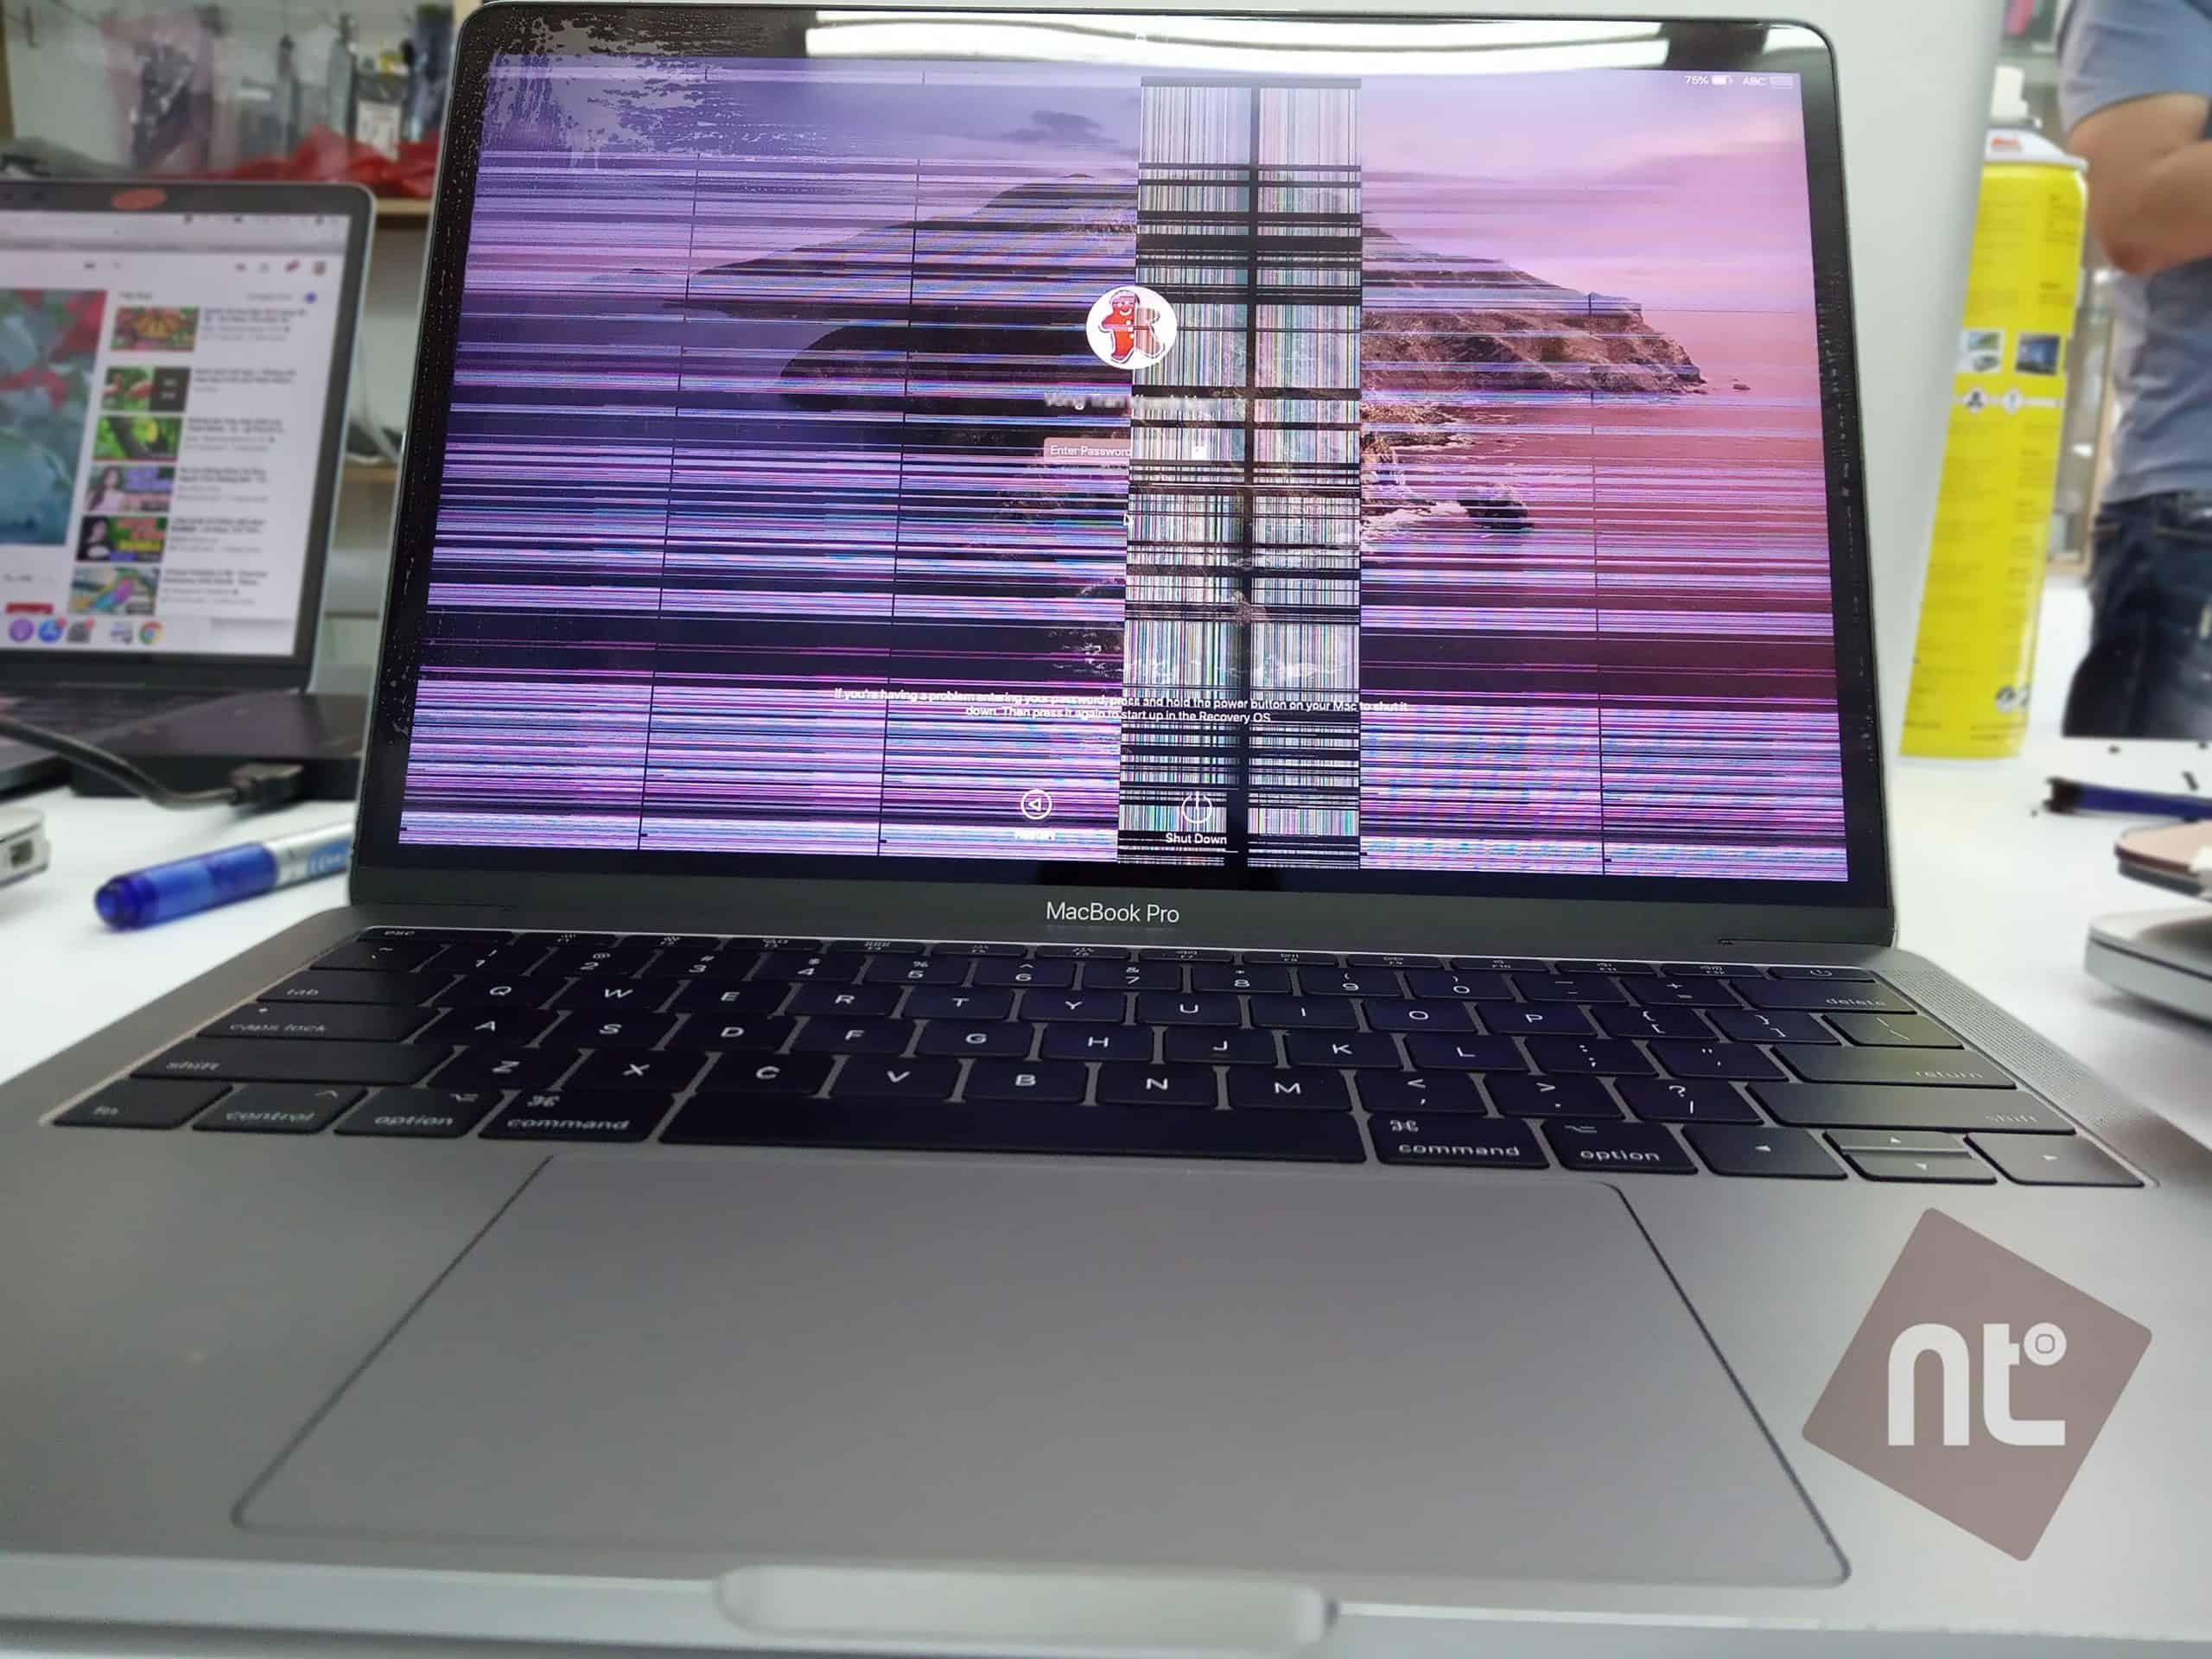 Đã có dòng Macbook sửa được màn hình mà không cần thay! - Hình 1